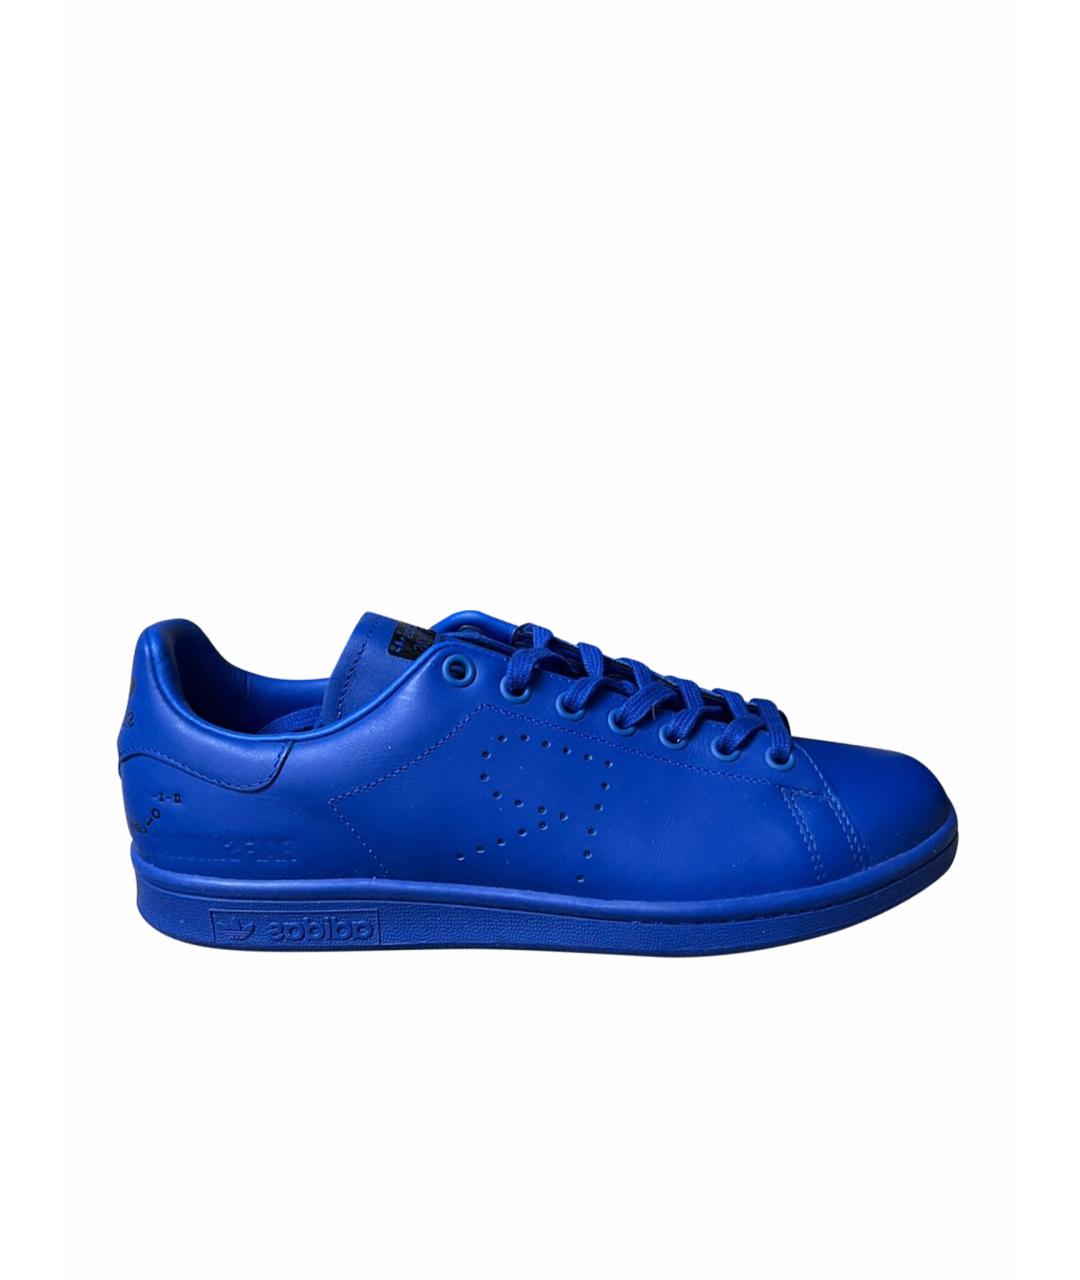 ADIDAS X RAF SIMONS Синие кожаные низкие кроссовки / кеды, фото 1